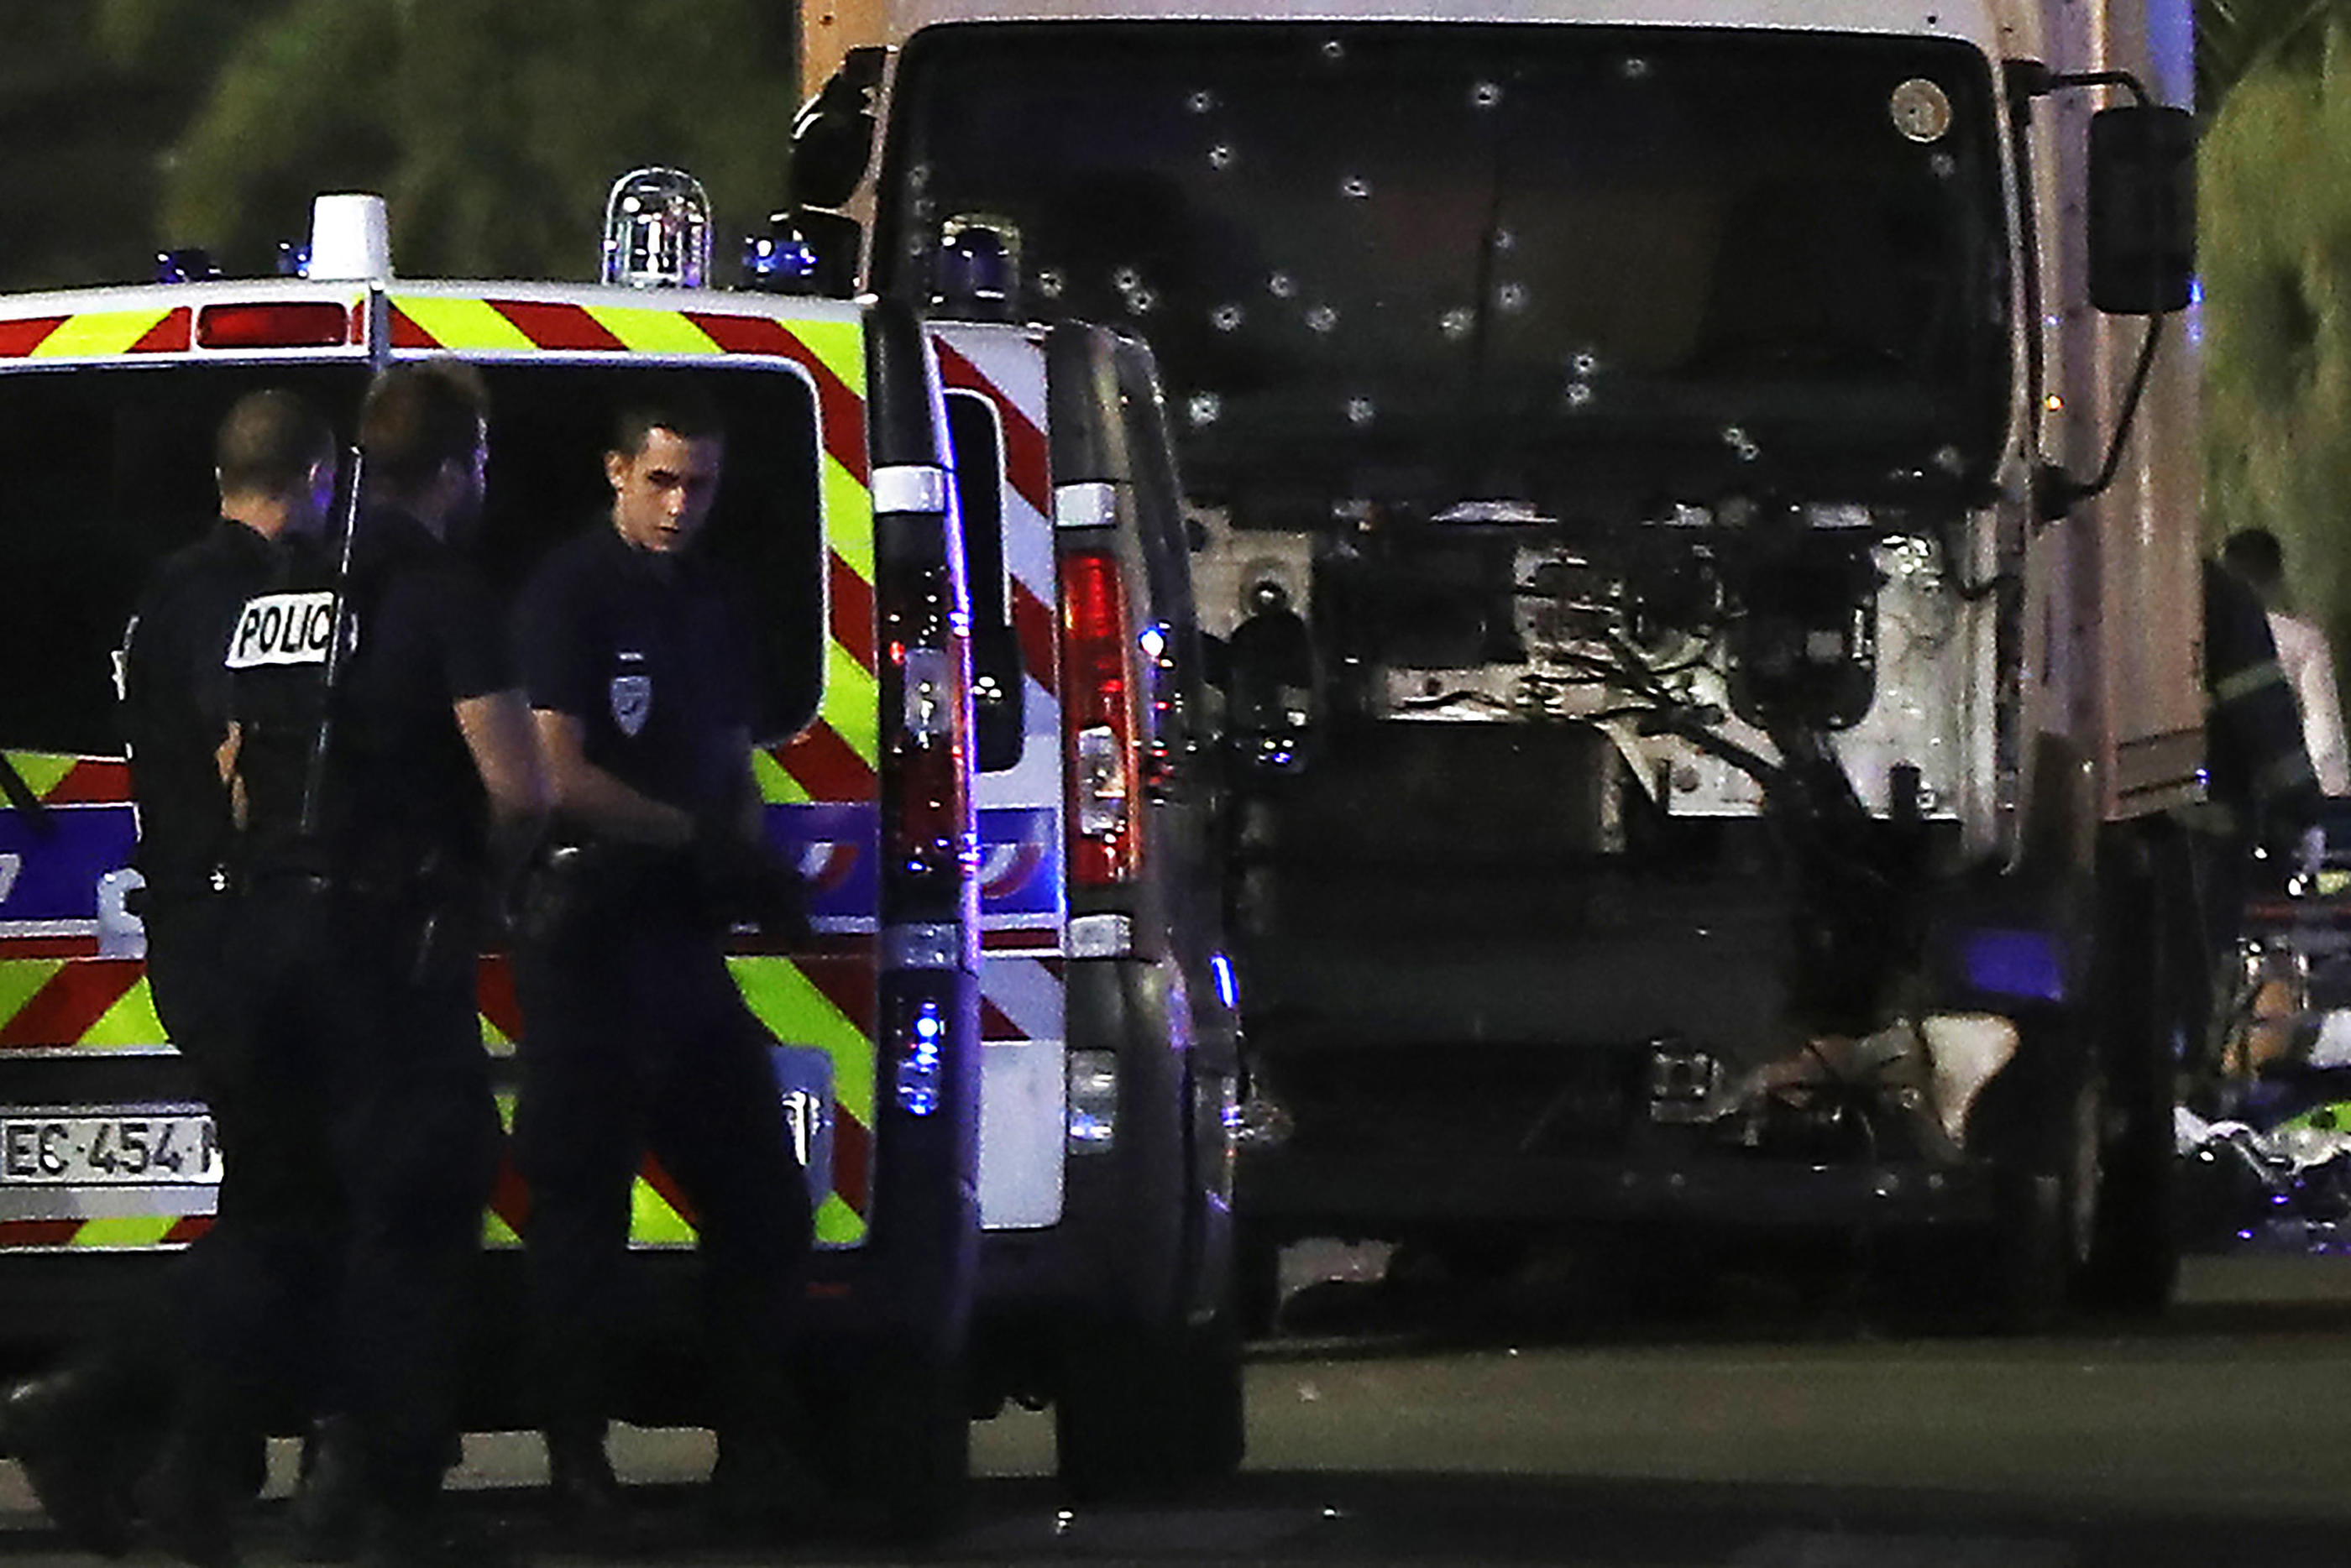 Le 14 juillet 2016, l'assaillant a été abattu par les forces de l'ordre moins de cinq minutes après avoir foncé au volant d'un camion sur la promenade des Anglais, tuant 86 personnes et blessant plus de 500 autres. AFP/Valéry Hache